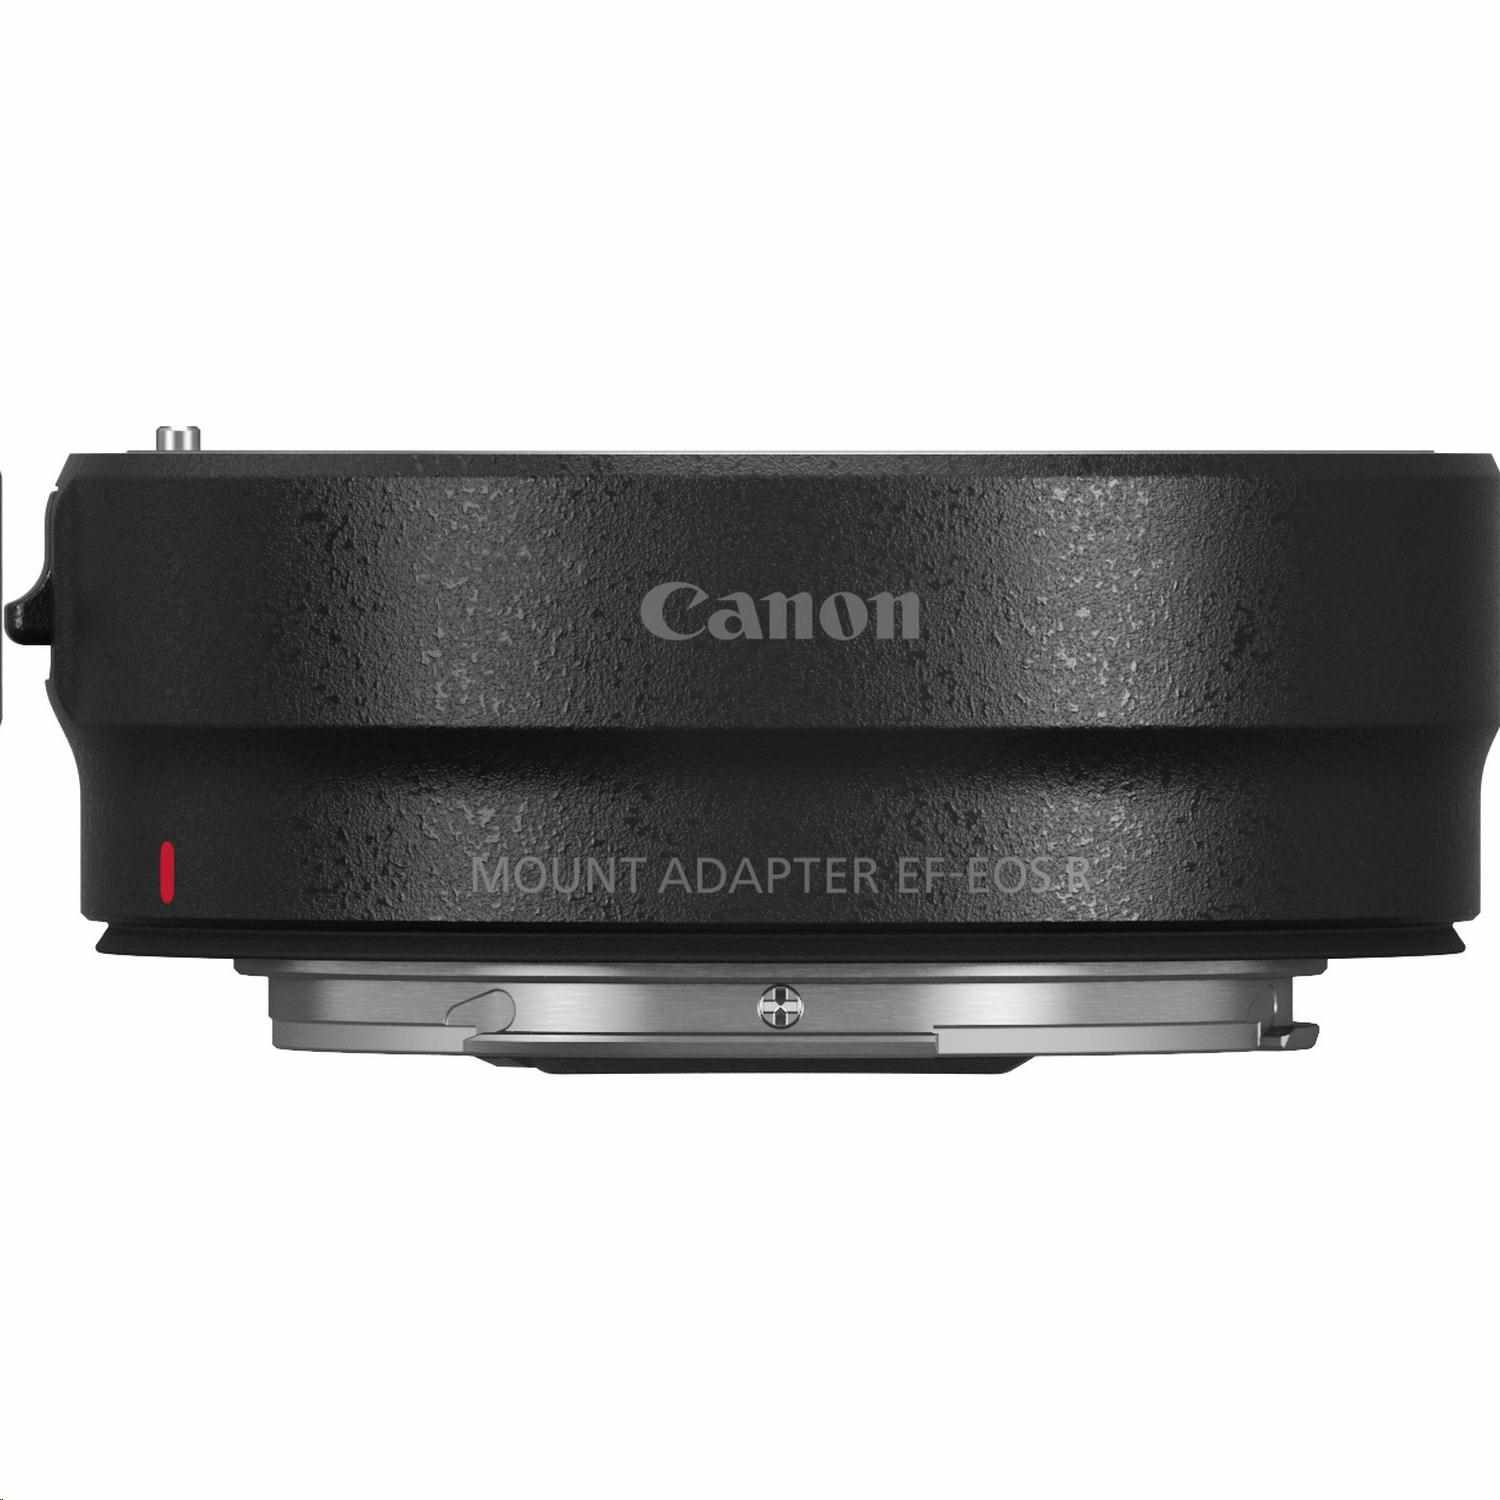 Canon Adaptér EOS R Mount Adapter EF-EOS R1 